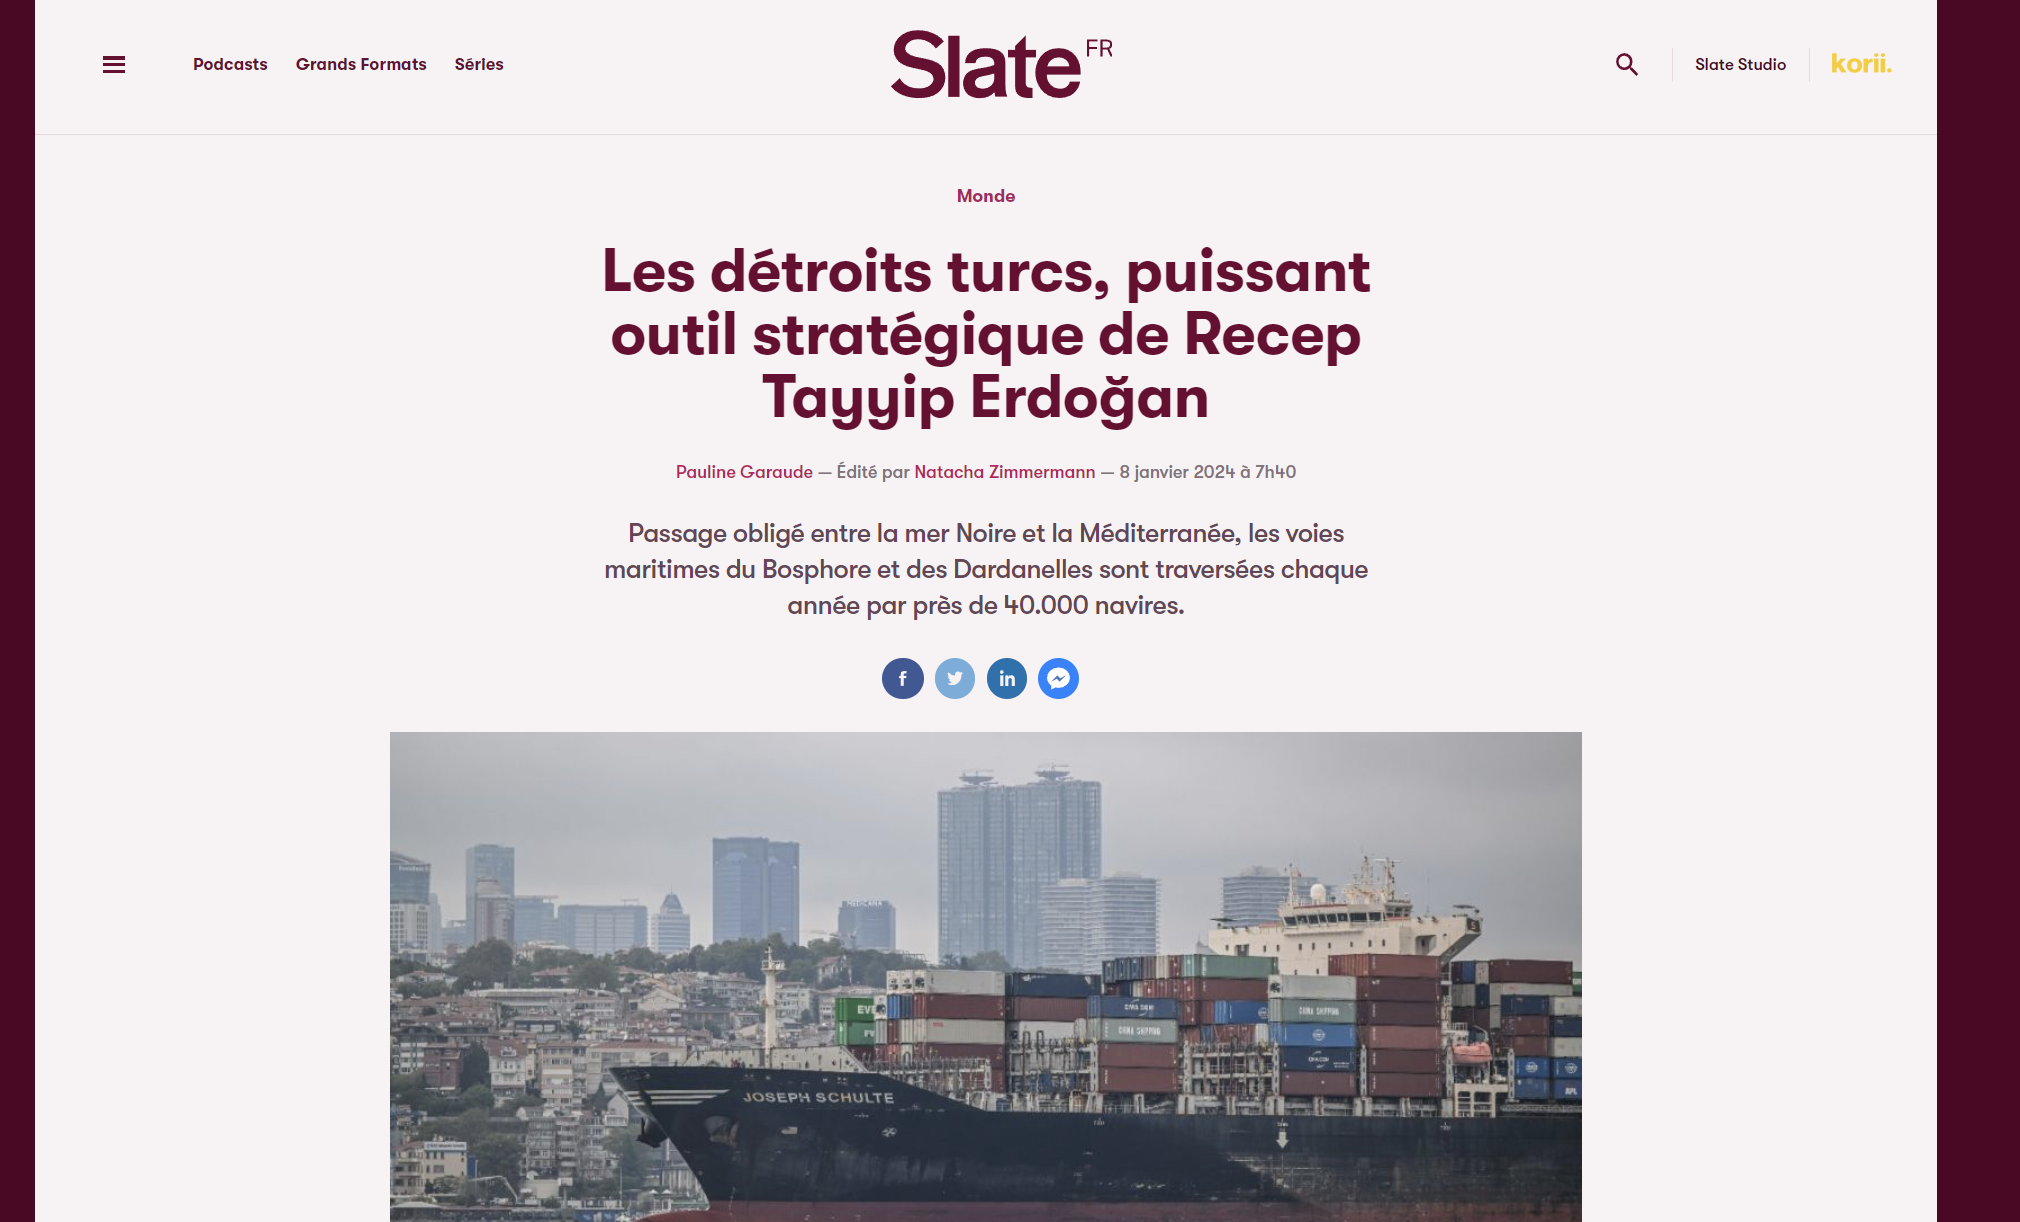 State: Τα Τουρκικά Στενά, ένα ισχυρό στρατηγικό εργαλείο για τον Ρετζέπ Ταγίπ Ερντογάν – Απαιτούνται δύο διώρυγες για την “ακύρωση” της συνθήκης του Μοντρέ